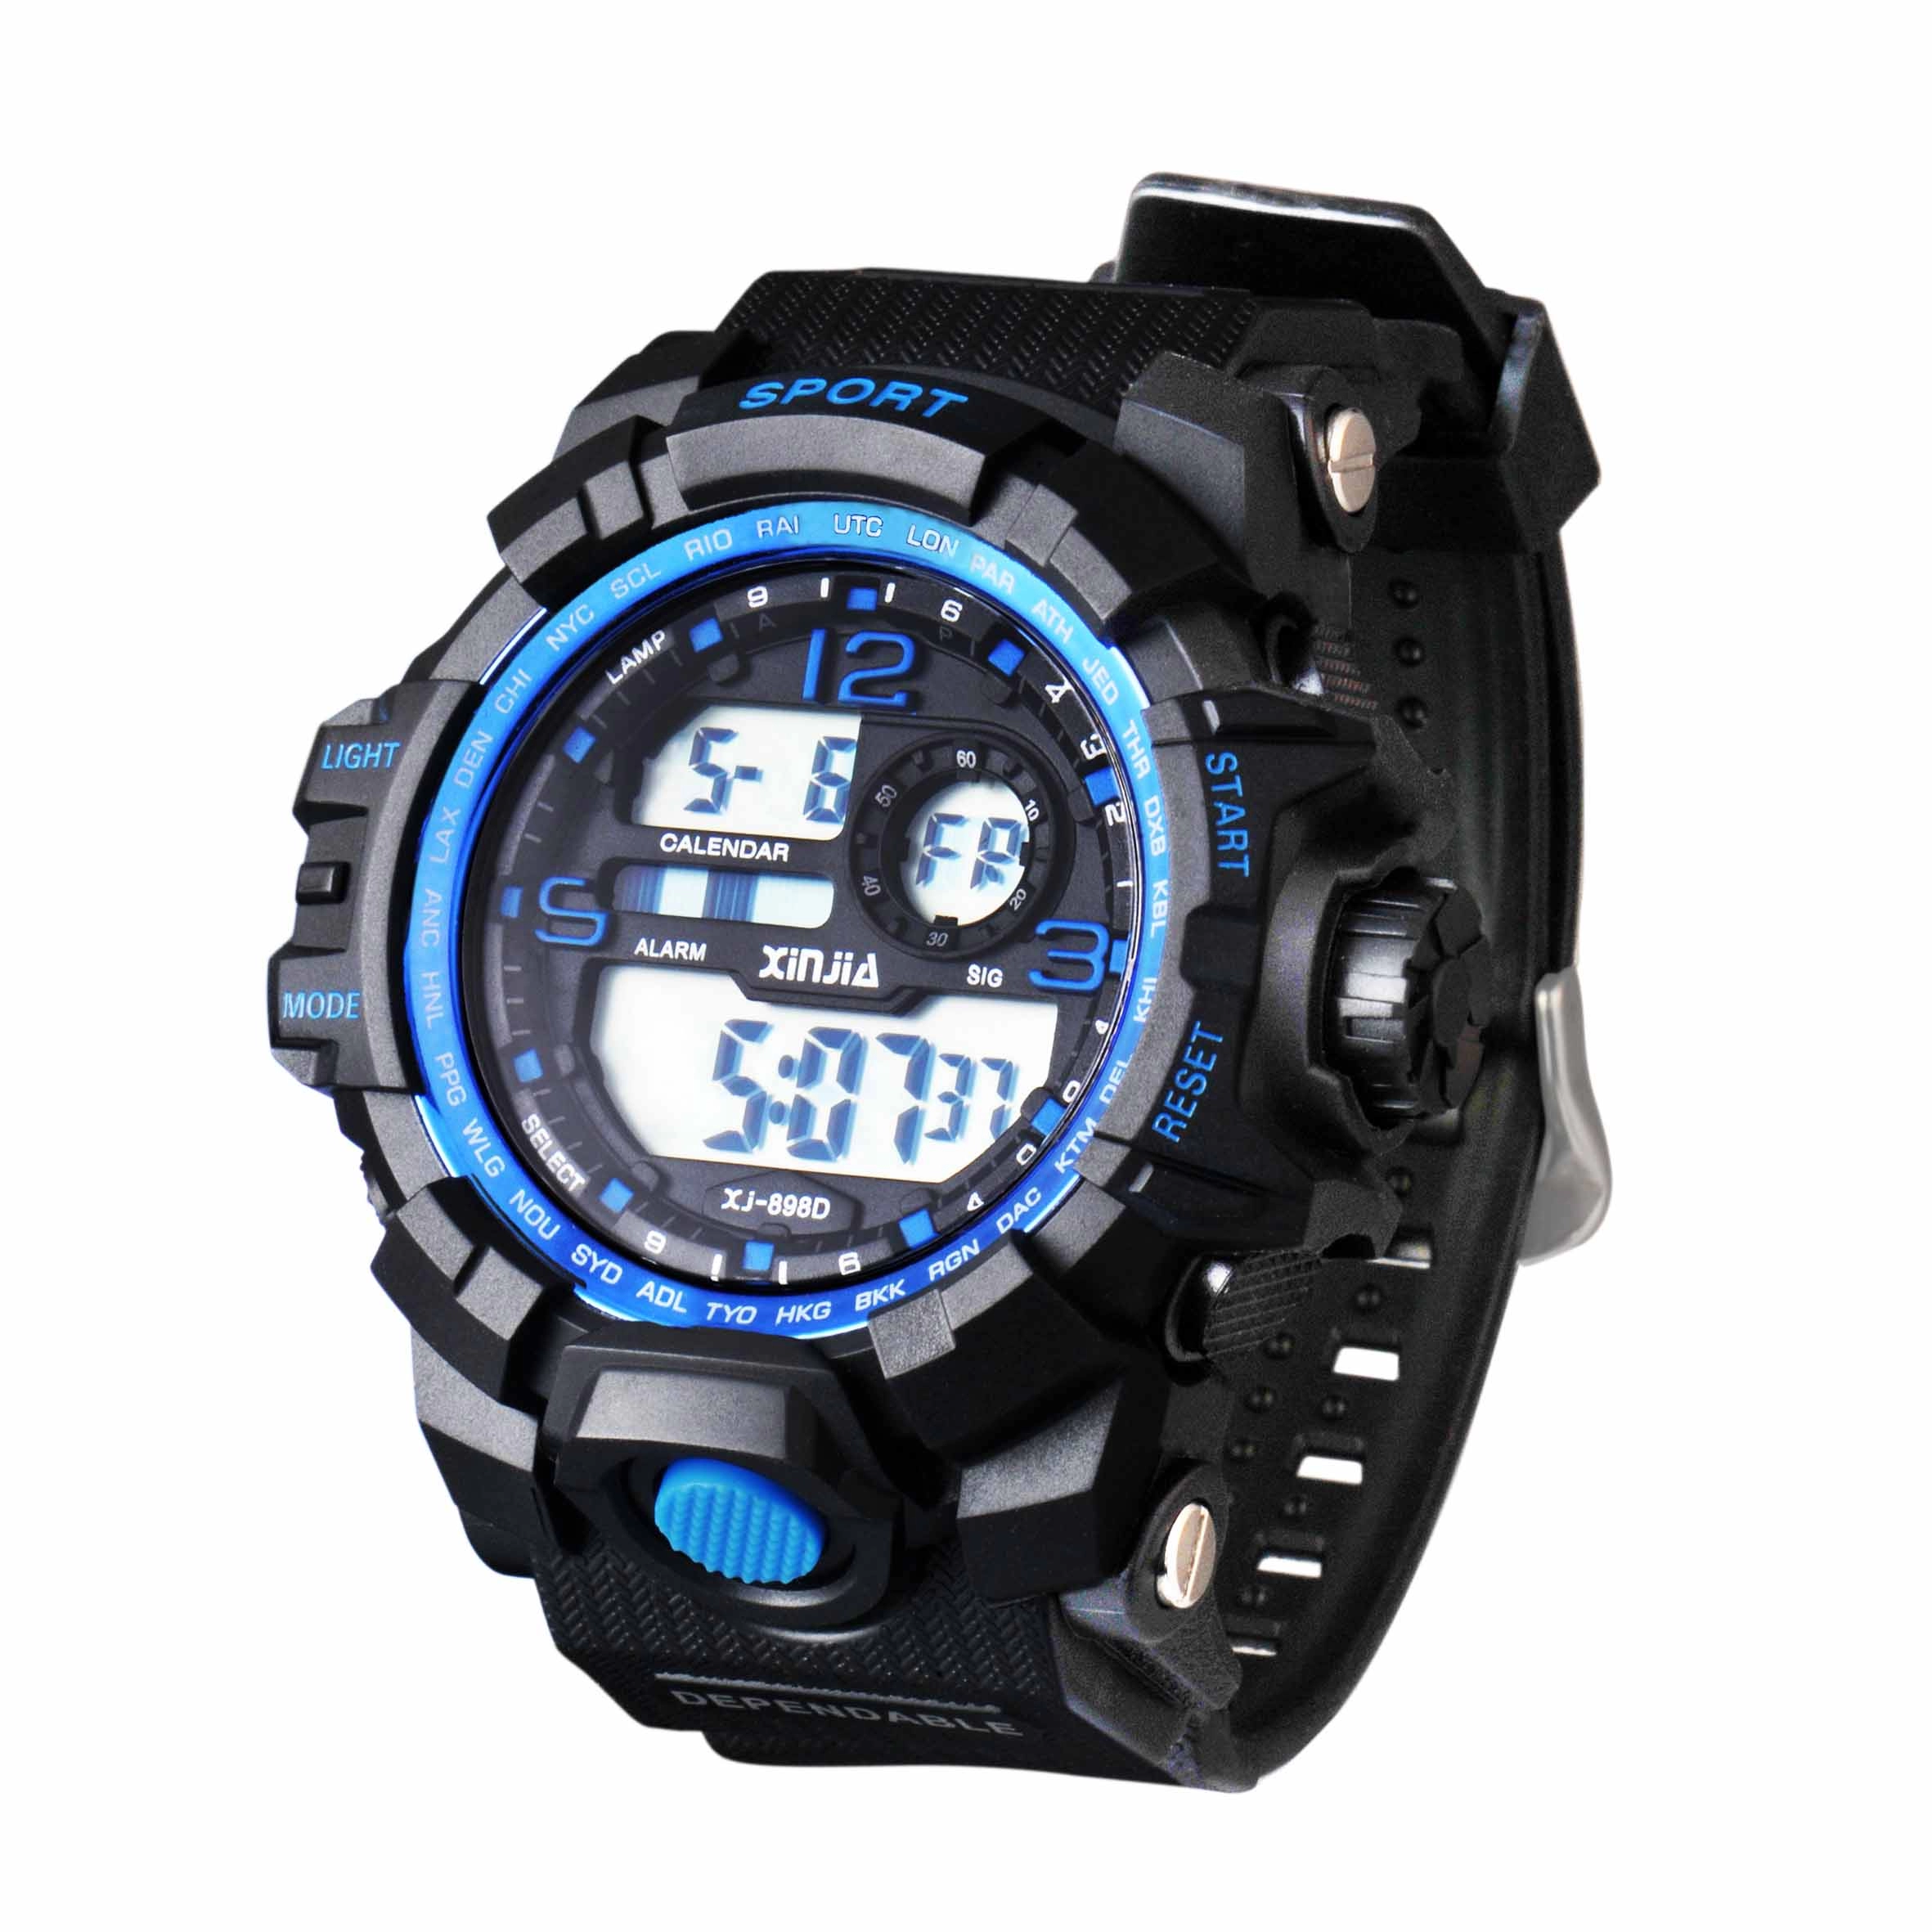 Promotional Black Mens Waterproof Digital Wrist Watch